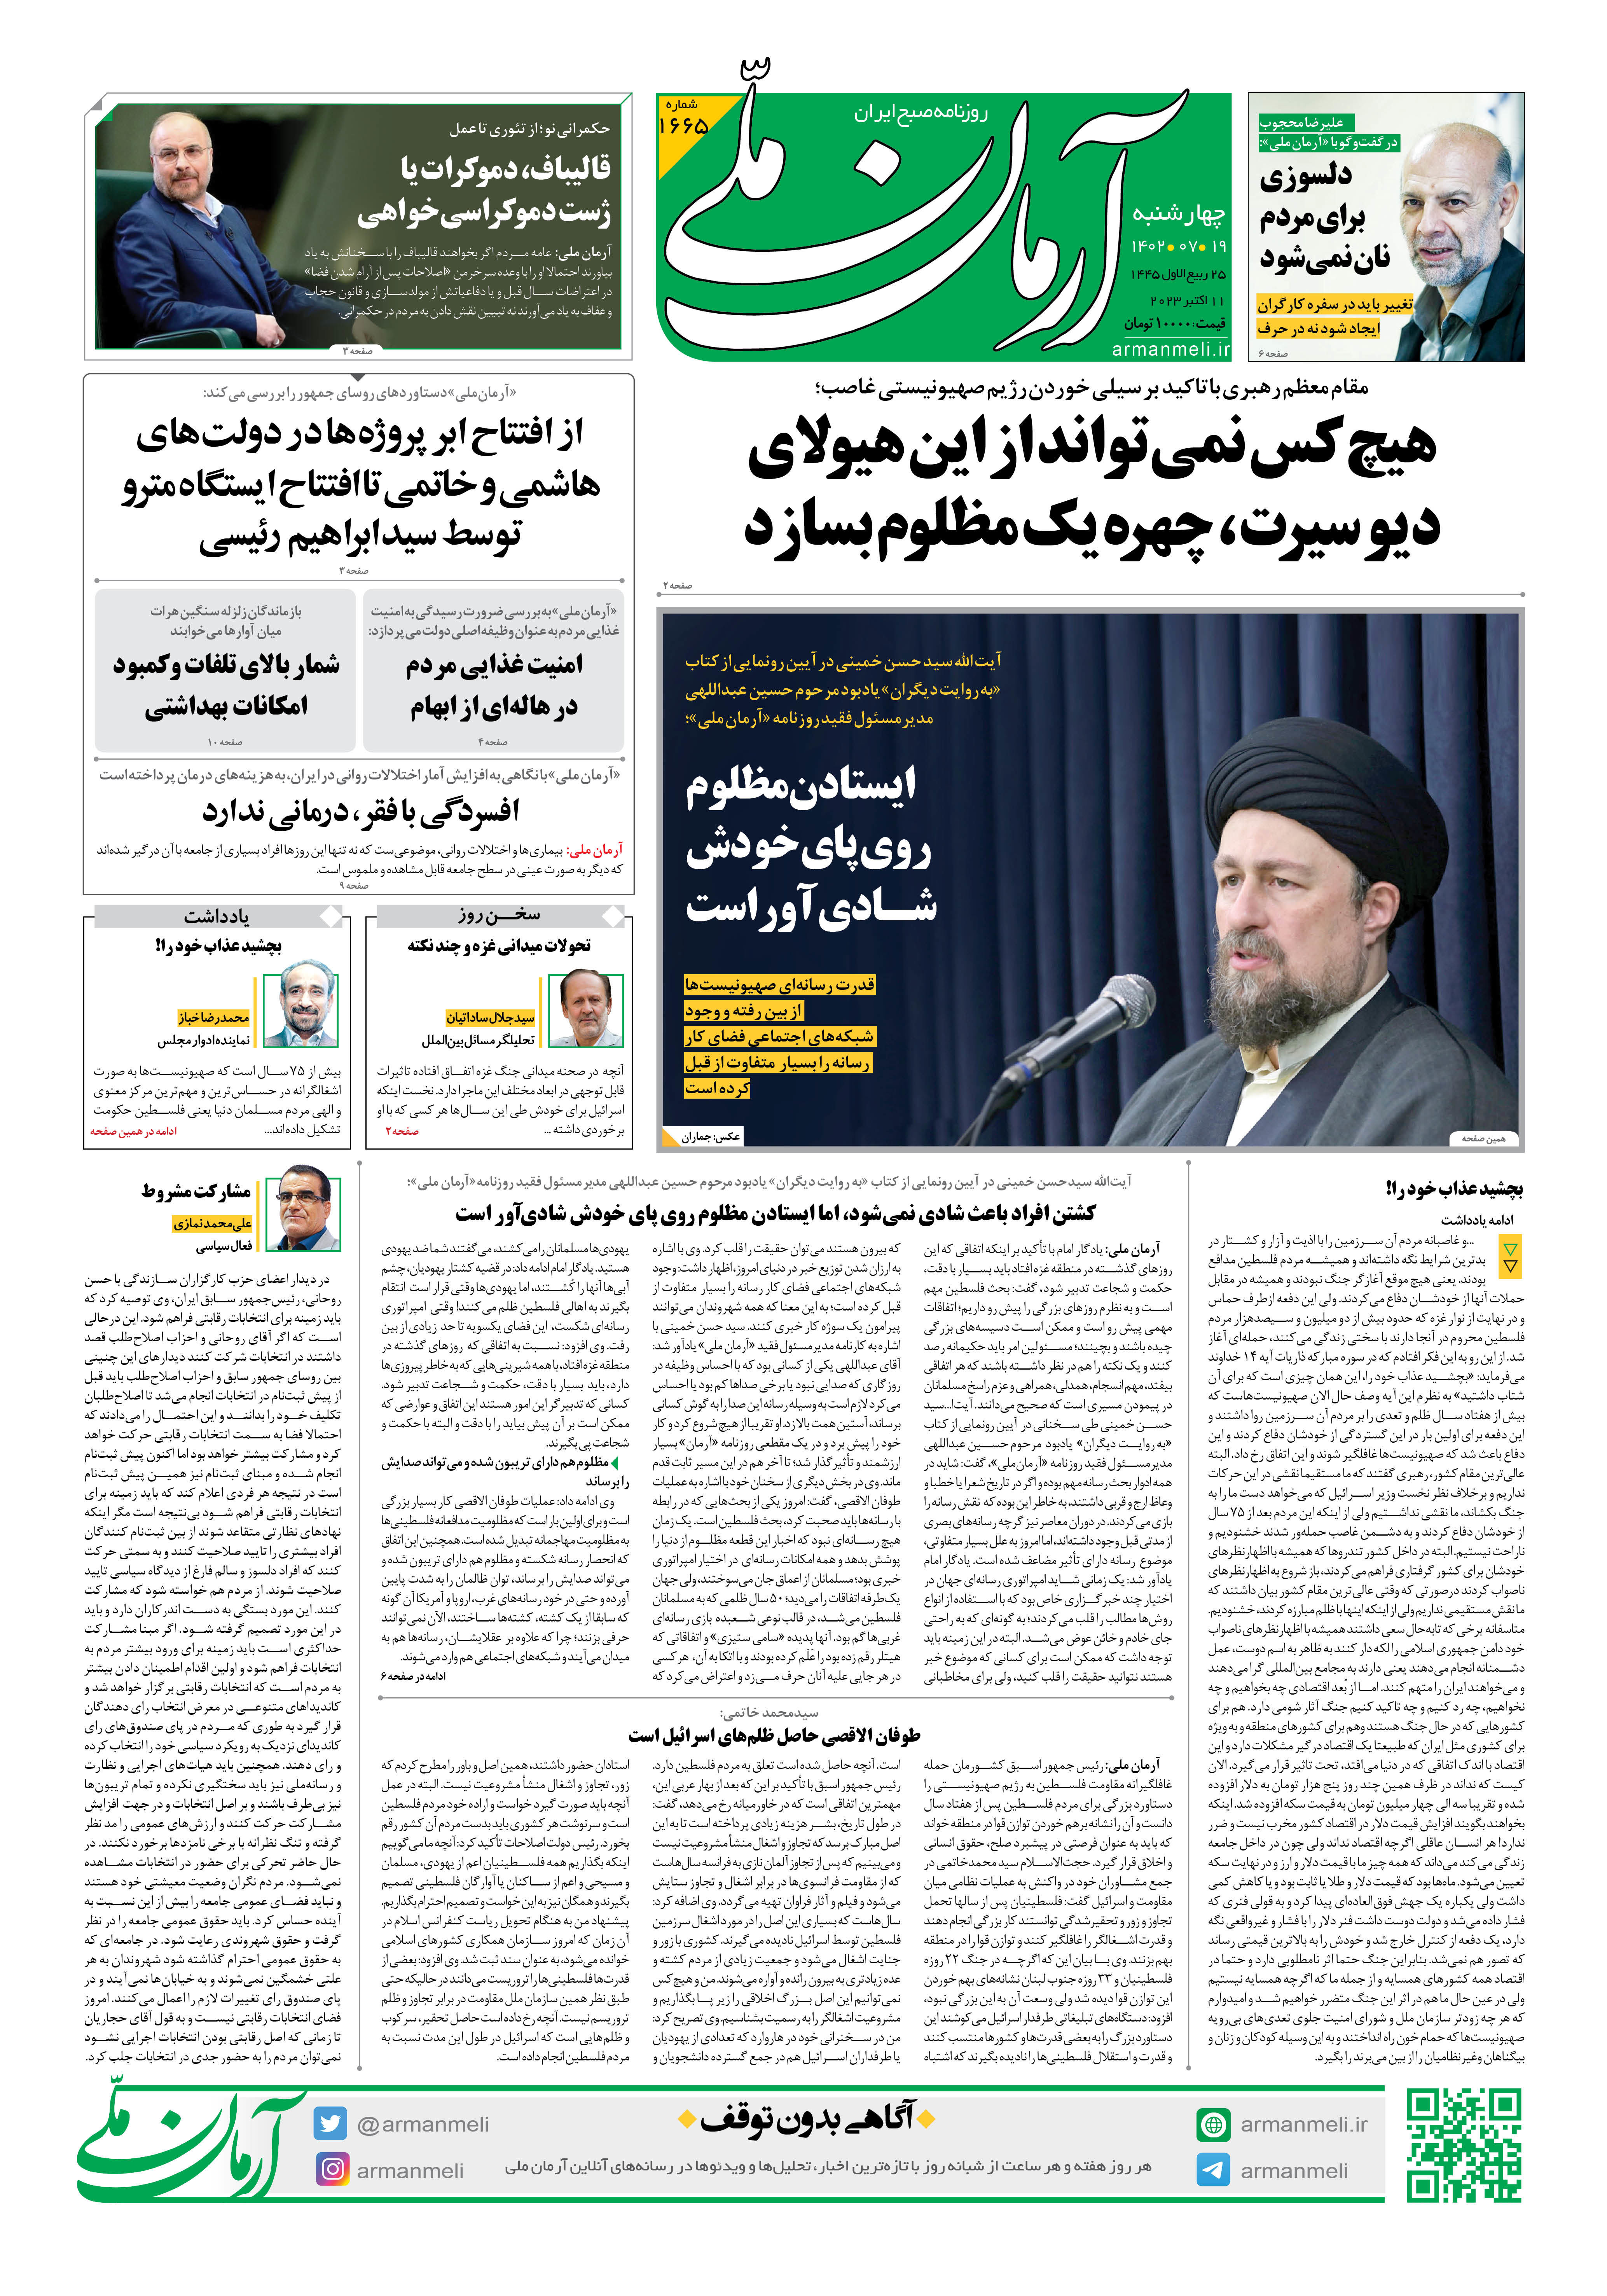  روزنامه آرمان ملی -چهارشنبه 19 مهر